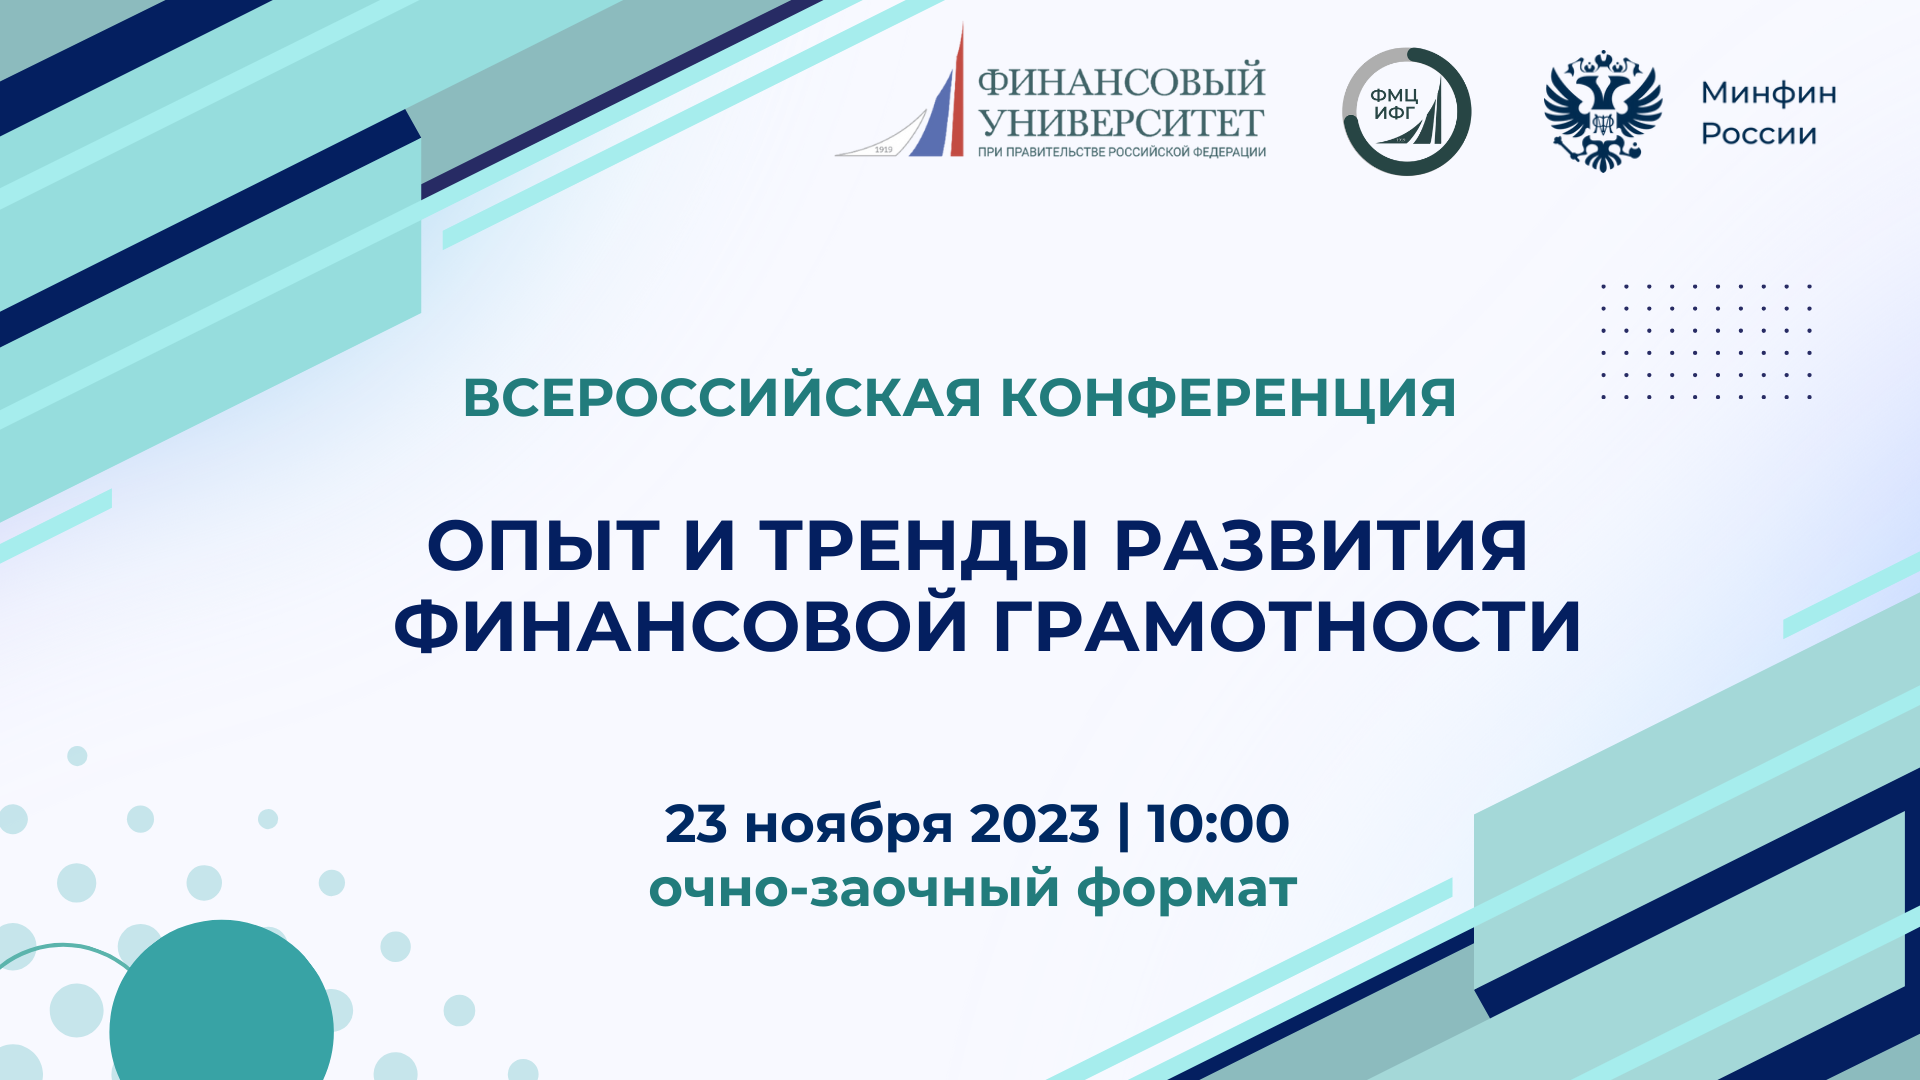 Всероссийская конференция по финансовой грамотности пройдет в Финансовом университете!